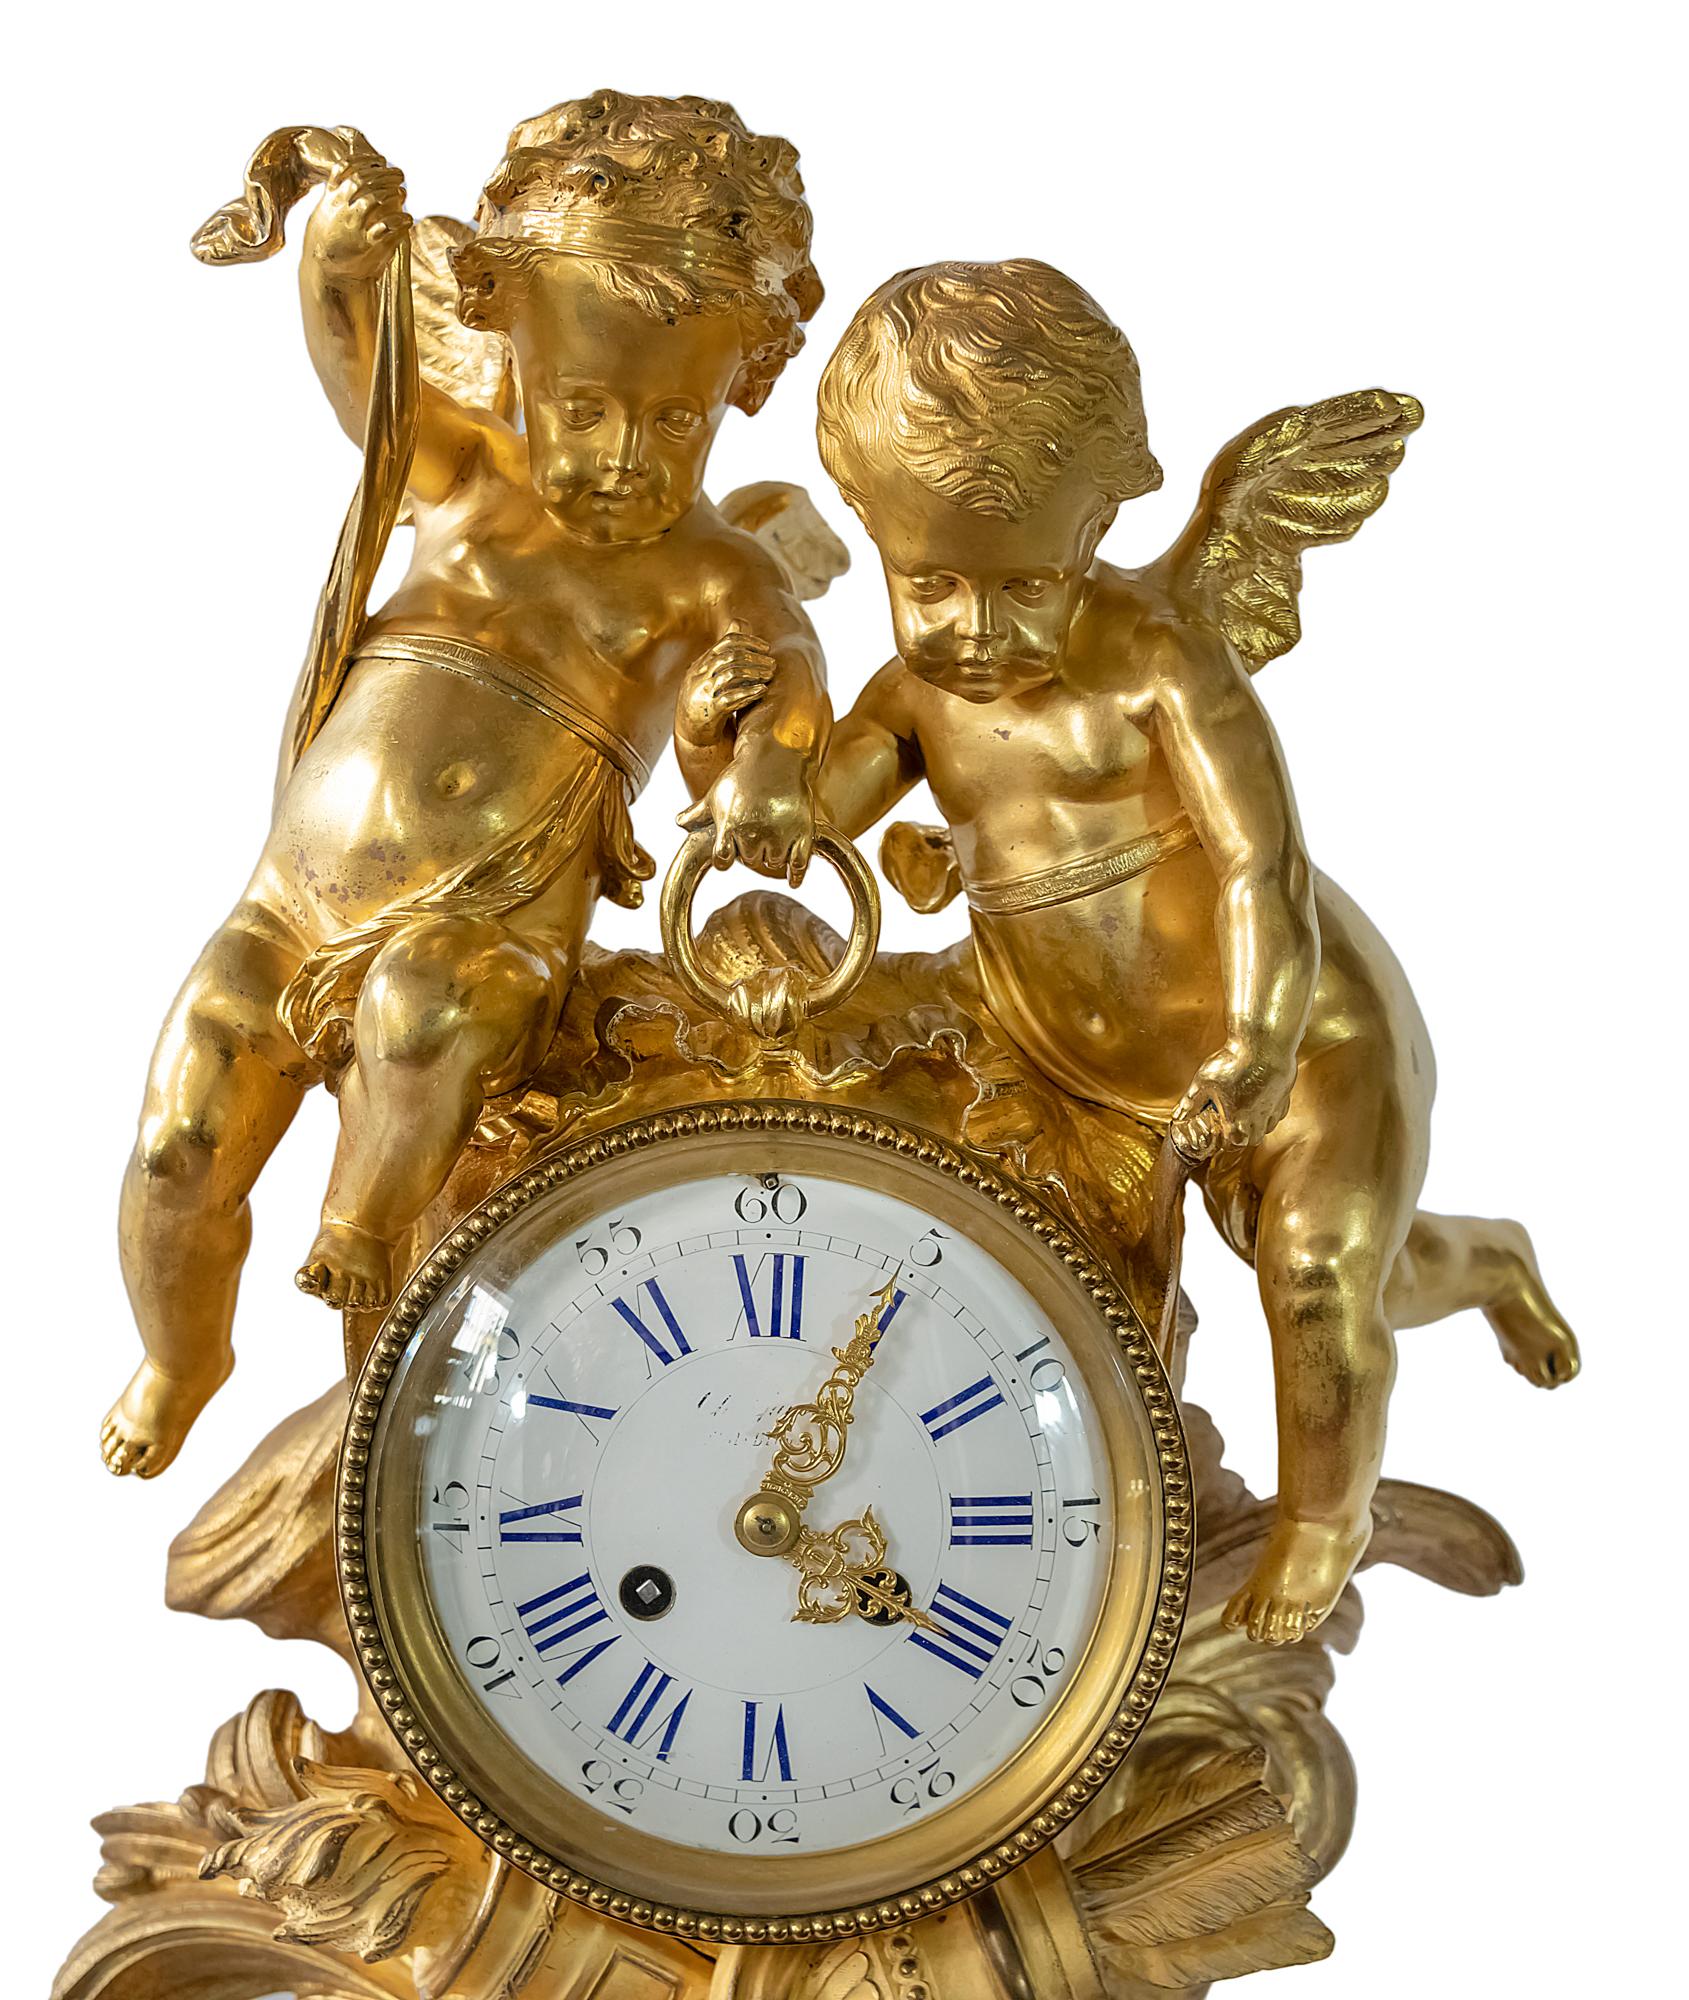 Grande horloge de cheminée française du 19ème siècle en bronze doré surmontée de deux anges tenant le cadran.
Les chiffres du cadran en émail sont peints à la main en bleu cobalt.
Marqué et numéroté à l'intérieur du mouvement de l'horloge.
Poids